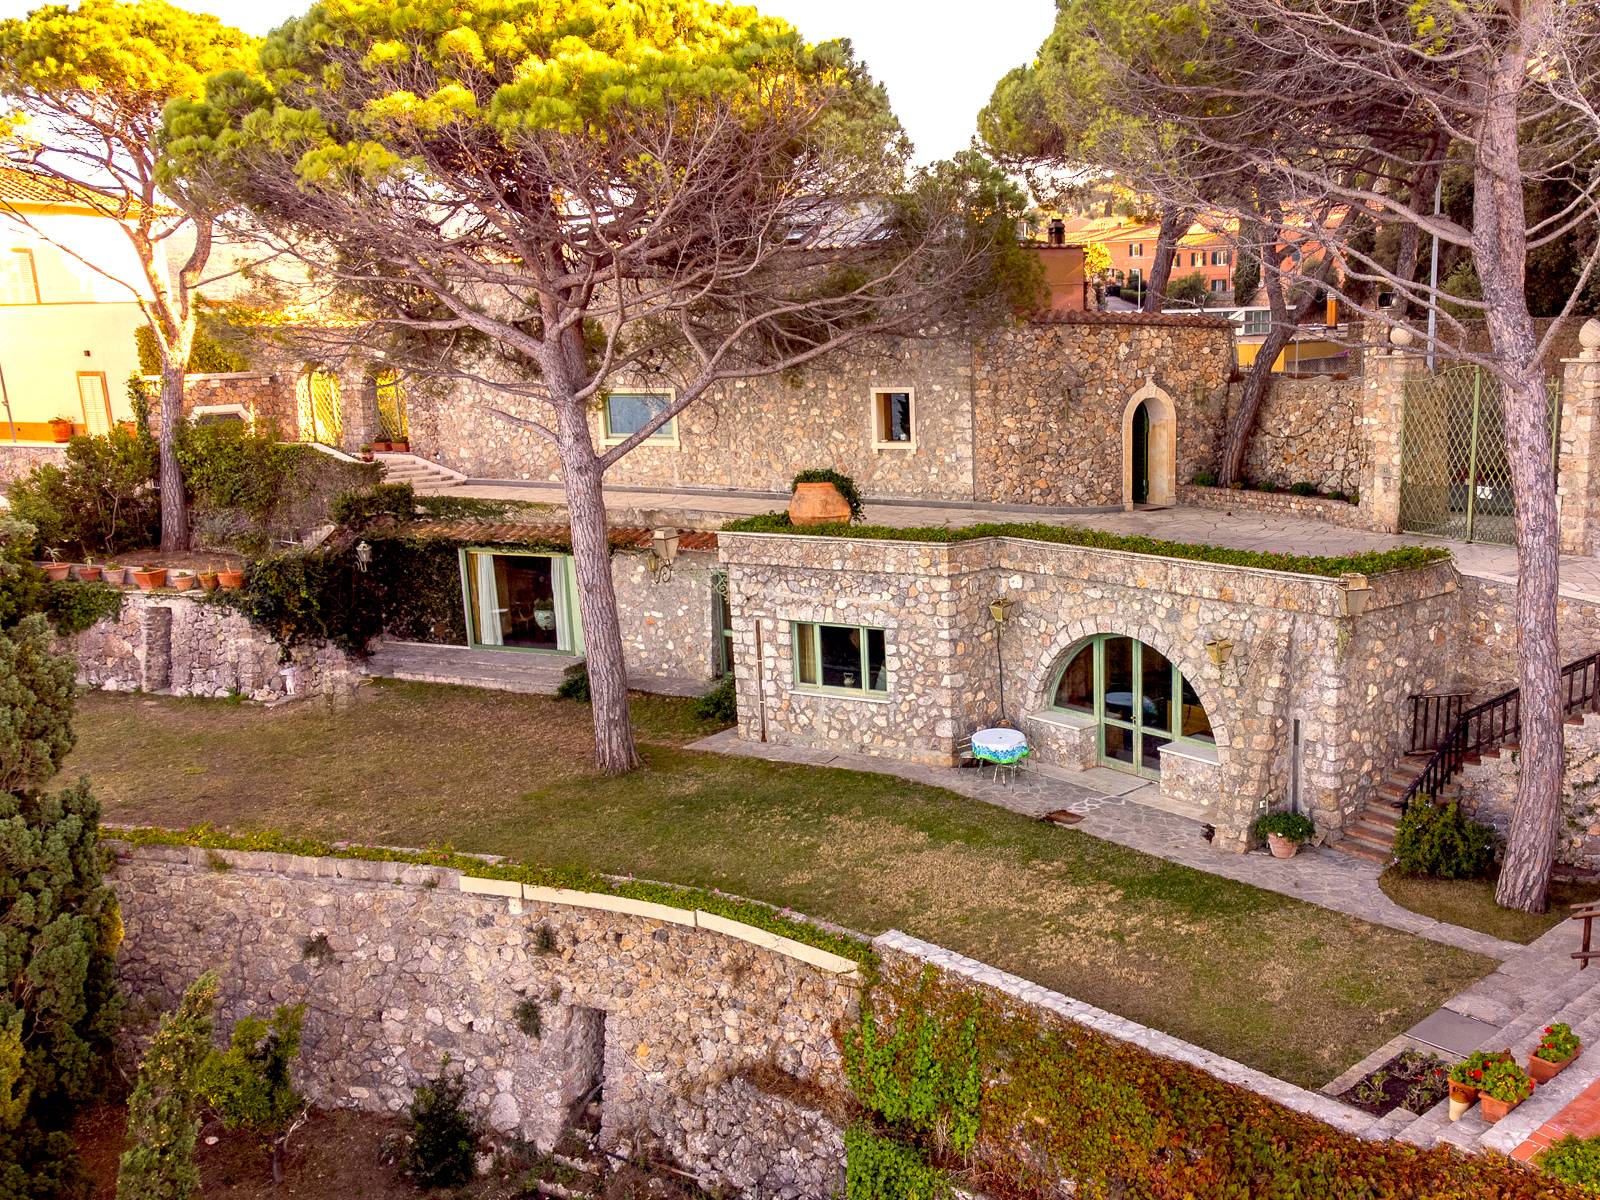 PORTO SANTO STEFANO – Incredible architect’s villa on the edge of a cliff